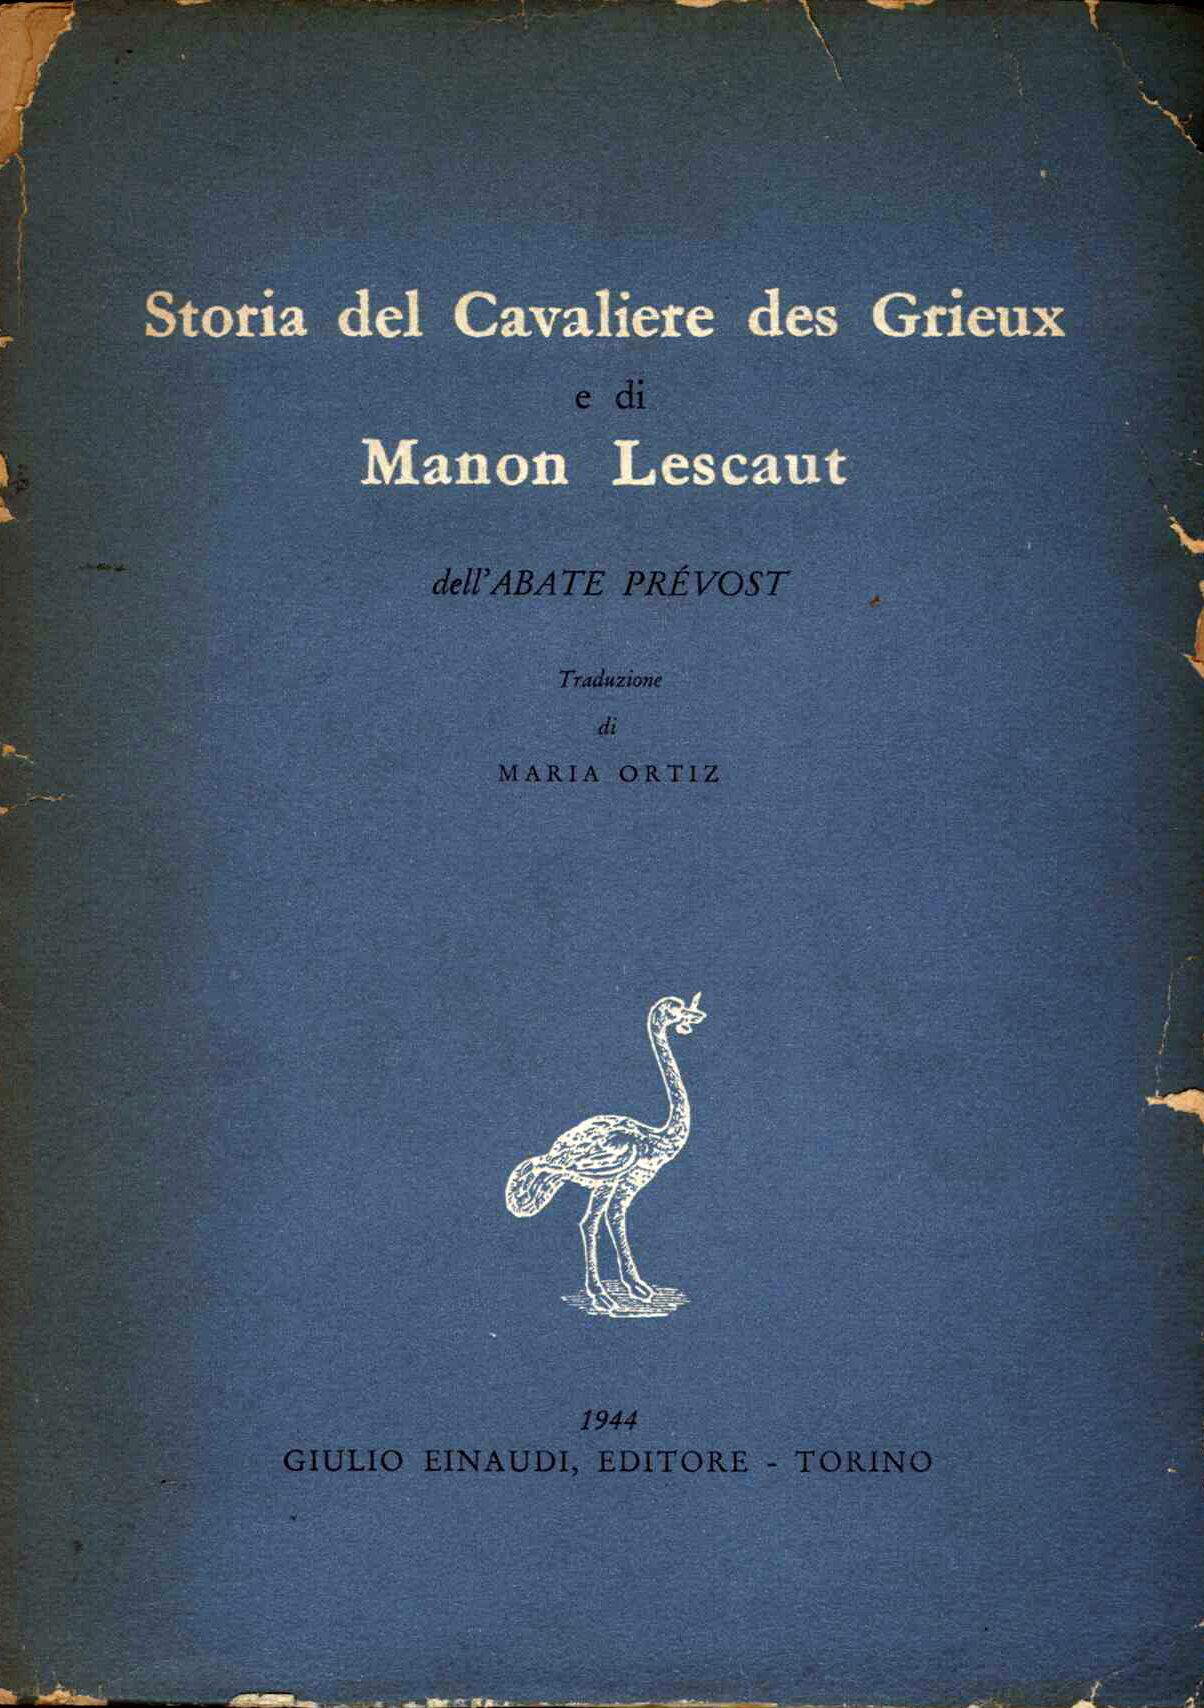 Storia del Cavaliere des Grieux e di manon Lescaut